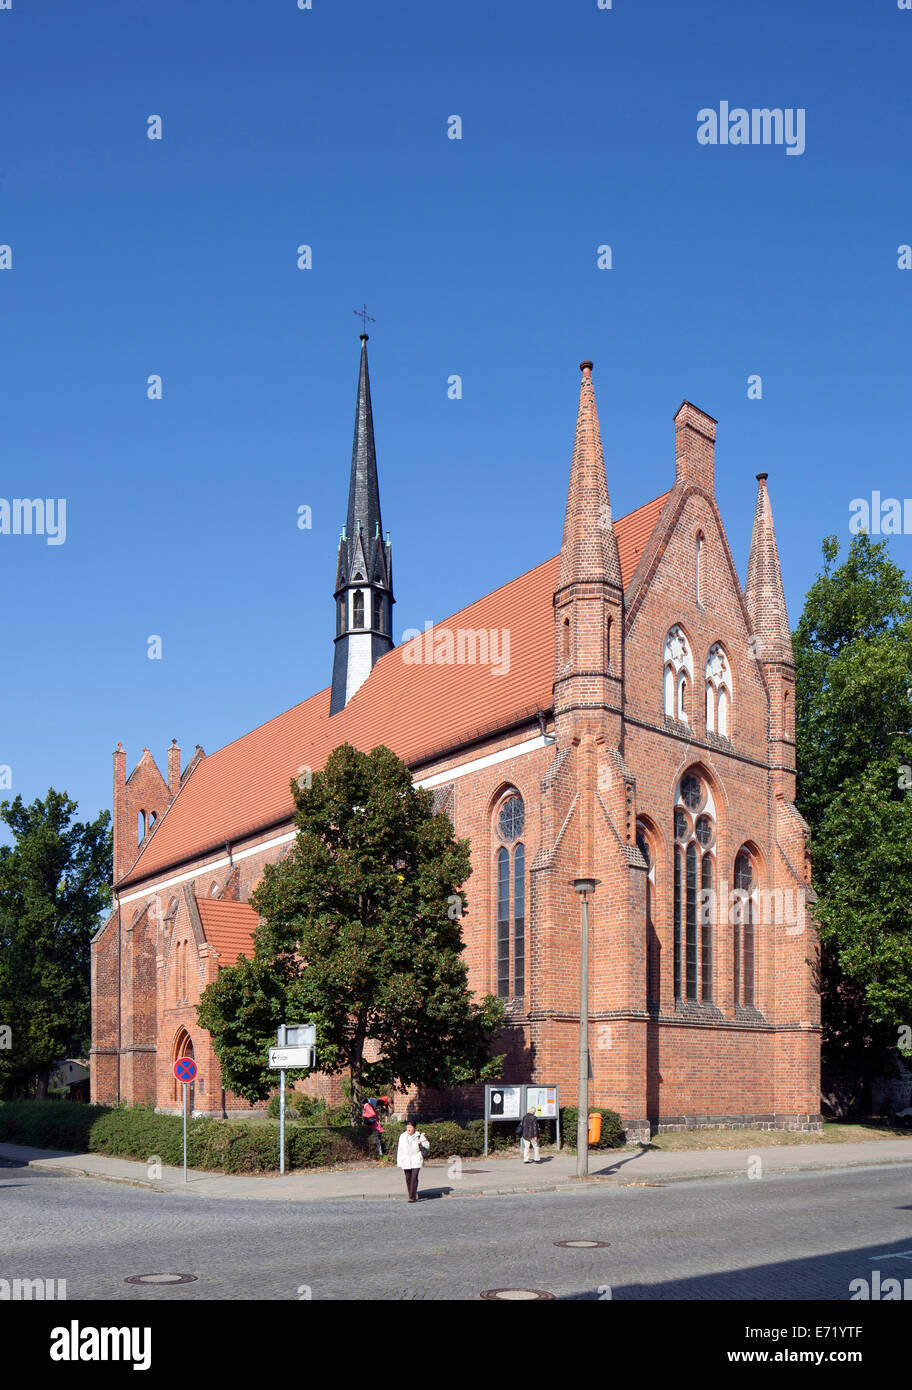 St. John's Church, Neubrandenburg, Mecklenburg-Western Pomerania, Germany Stock Photo